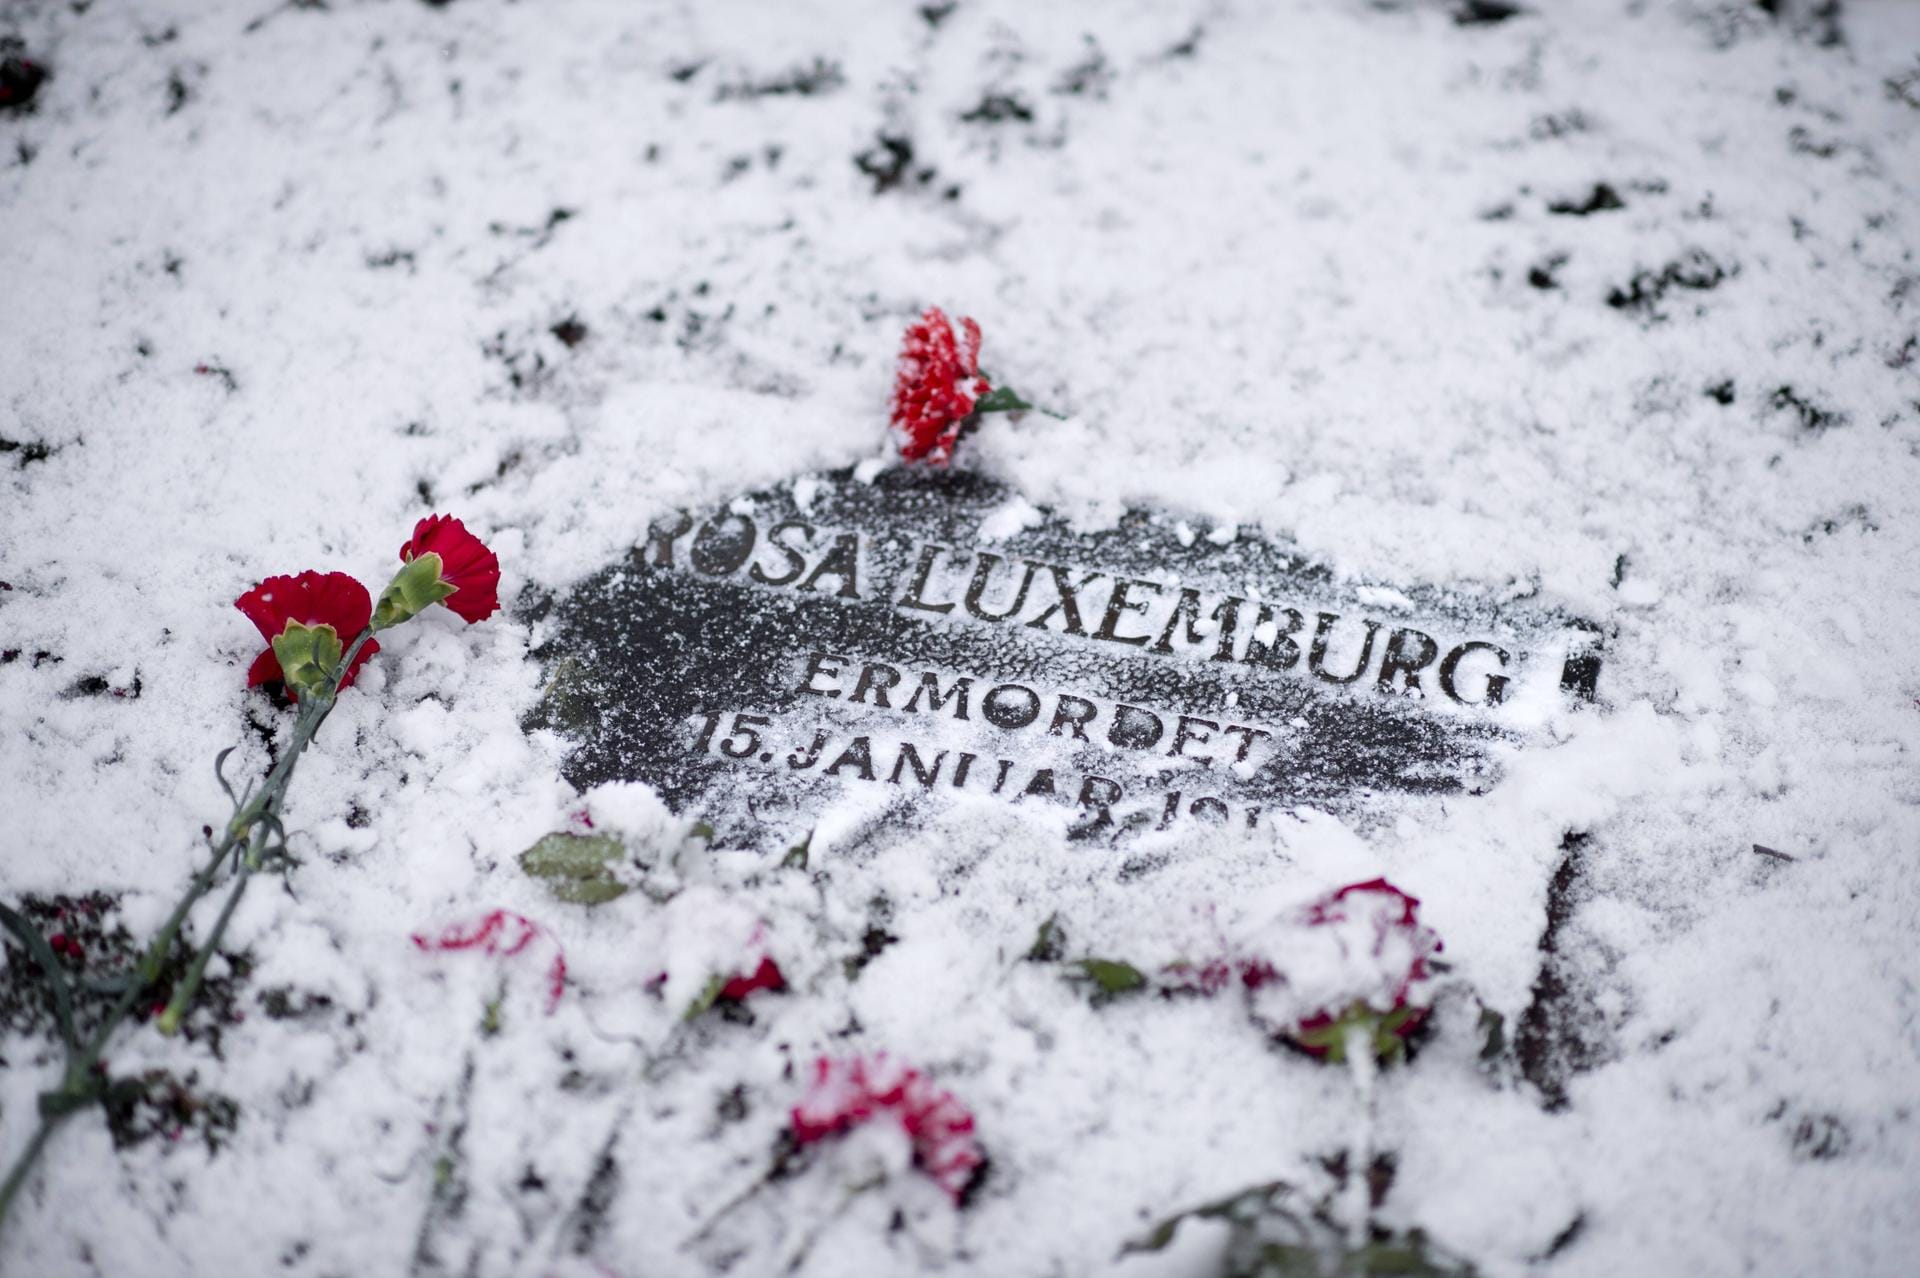 Auf dem Zentralfriedhof Friedrichsfelde in Berlin werden Luxemburg und Liebkknecht beigesetzt. Linke, Sozialisten, Kommunisten und Sozialdemokraten erinnern an den Tag der Ermordung.